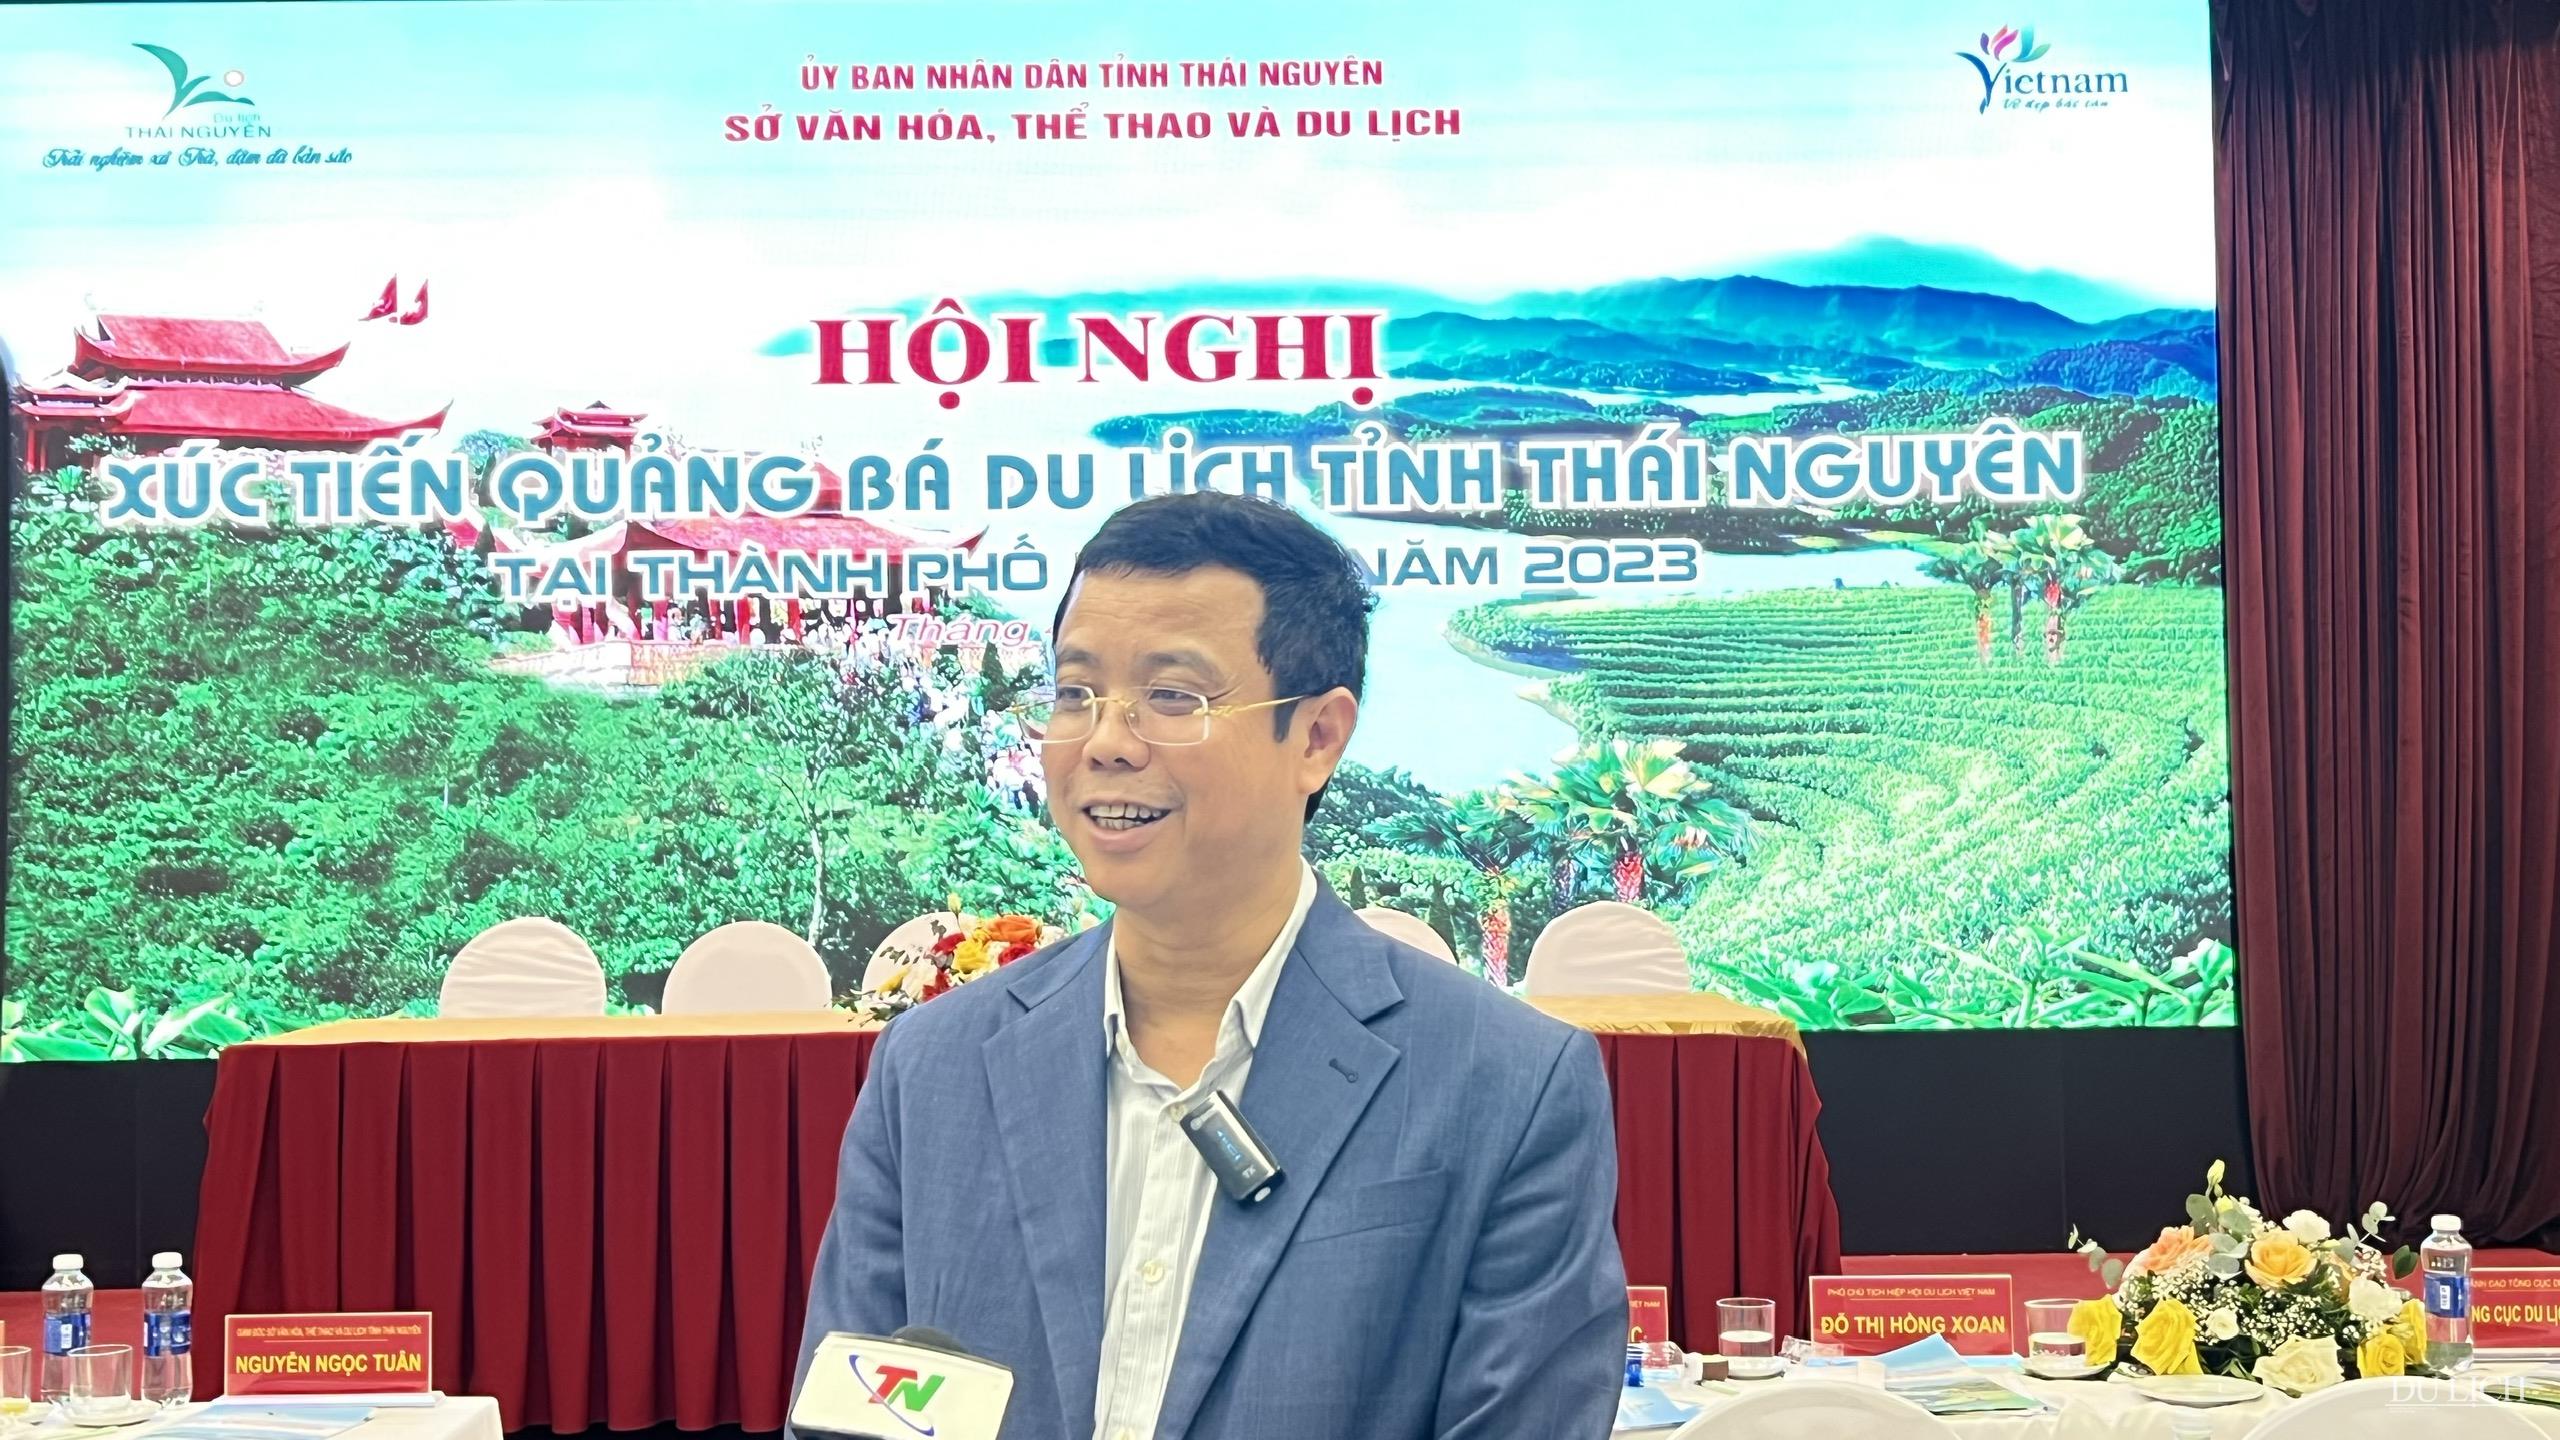 Phó Tổng cục trưởng Tổng cục Du lịch Nguyễn Lê Phúc: Thái Nguyên cần phát huy hiệu quả các mối quan hệ liên kết giữa tỉnh, địa phương, thành phố lớn nhằm tạo ra những nguồn khách lớn